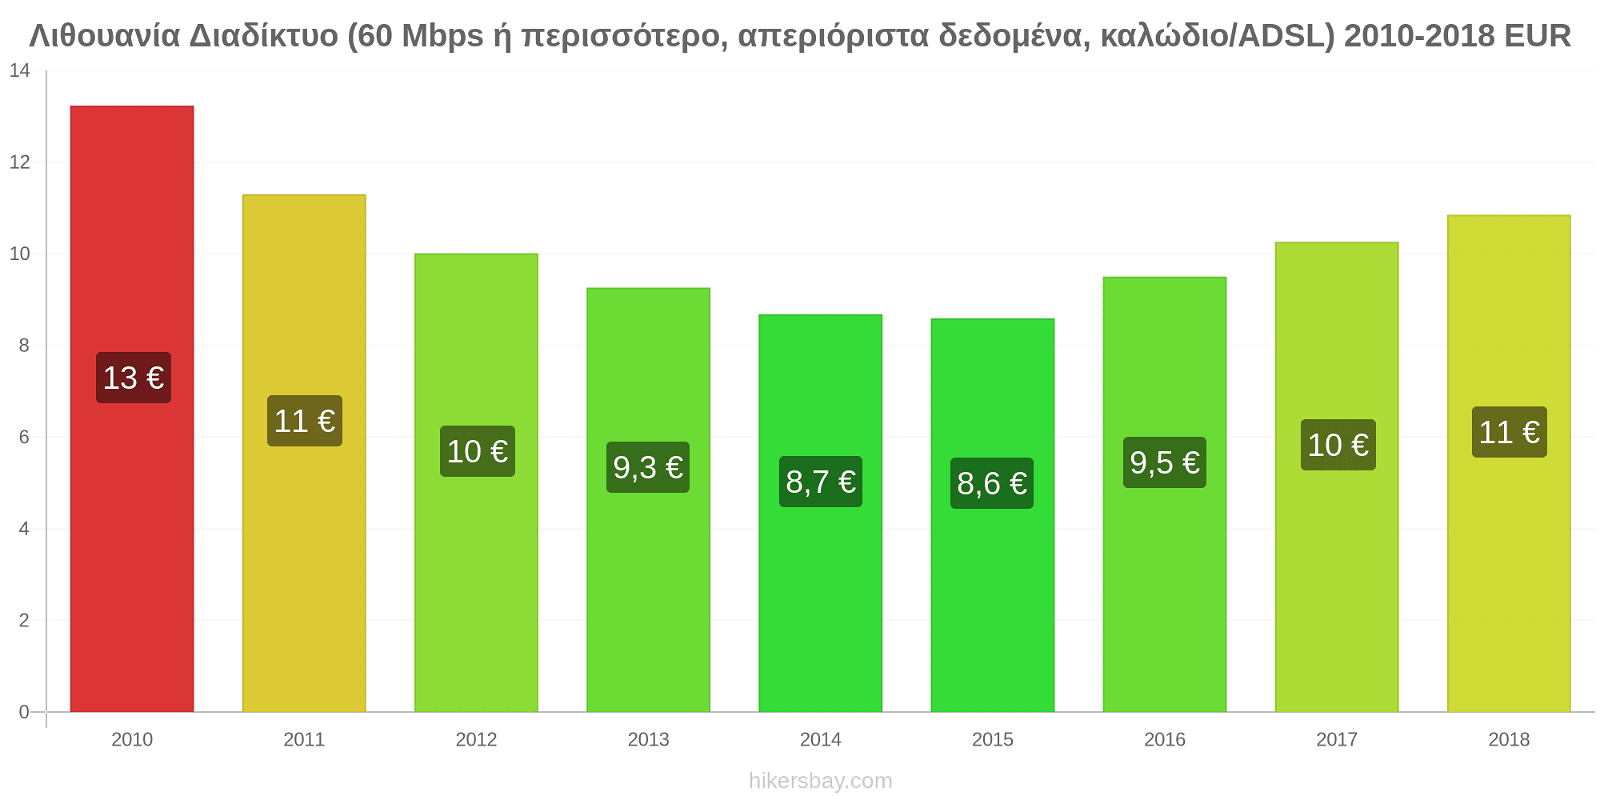 Λιθουανία αλλαγές τιμών Διαδίκτυο (60 Mbps ή περισσότερο, απεριόριστα δεδομένα, καλώδιο/ADSL) hikersbay.com